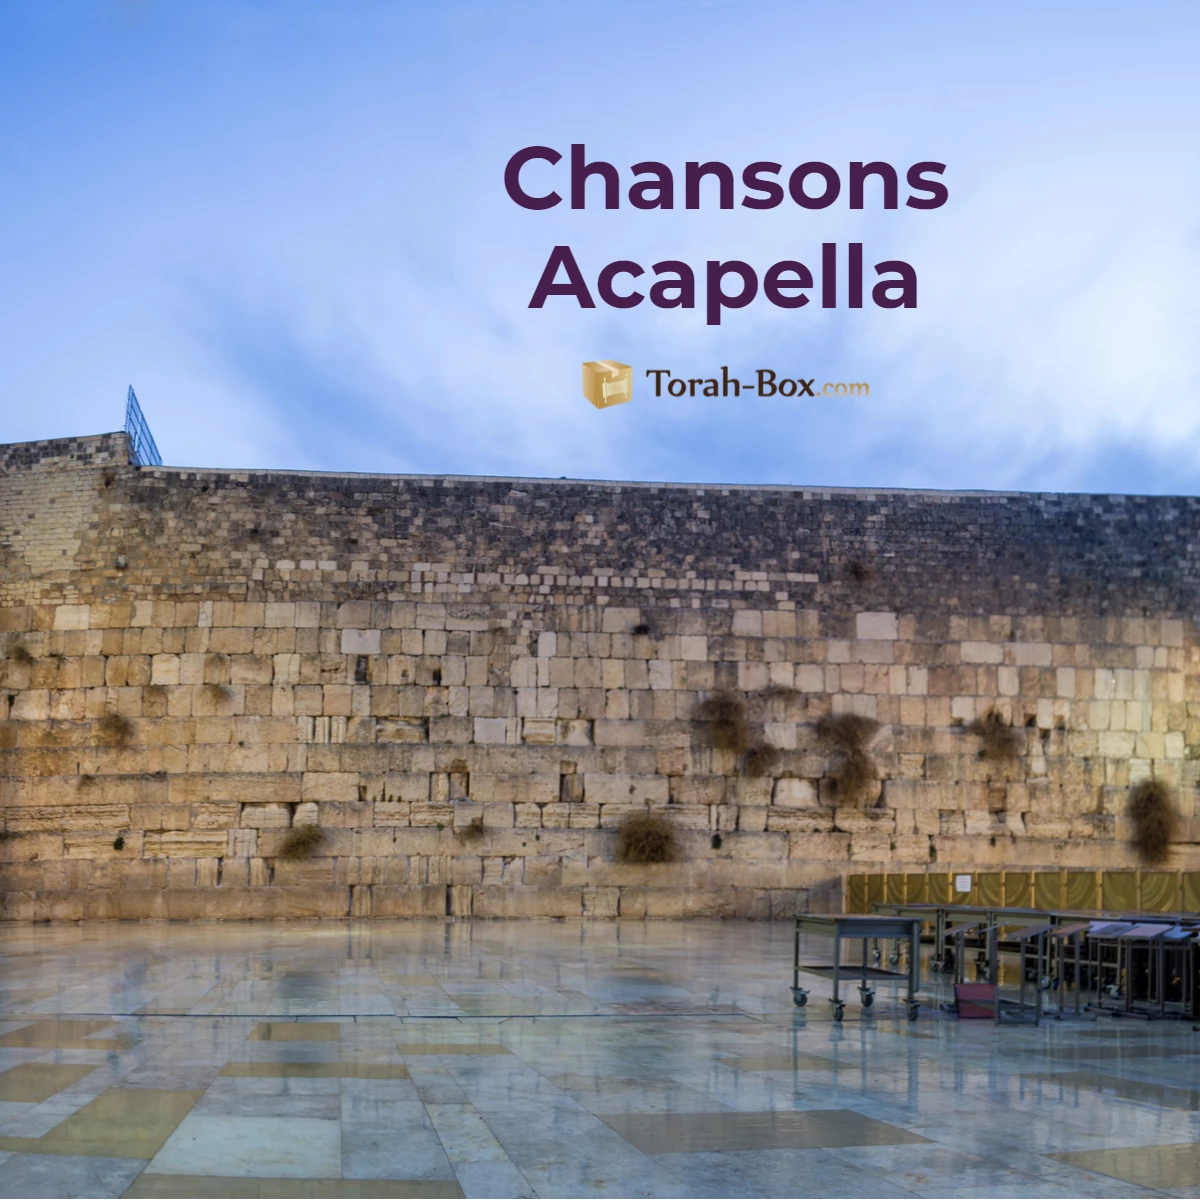 Les nouvelles musiques A Capella sur Torah-Box Music